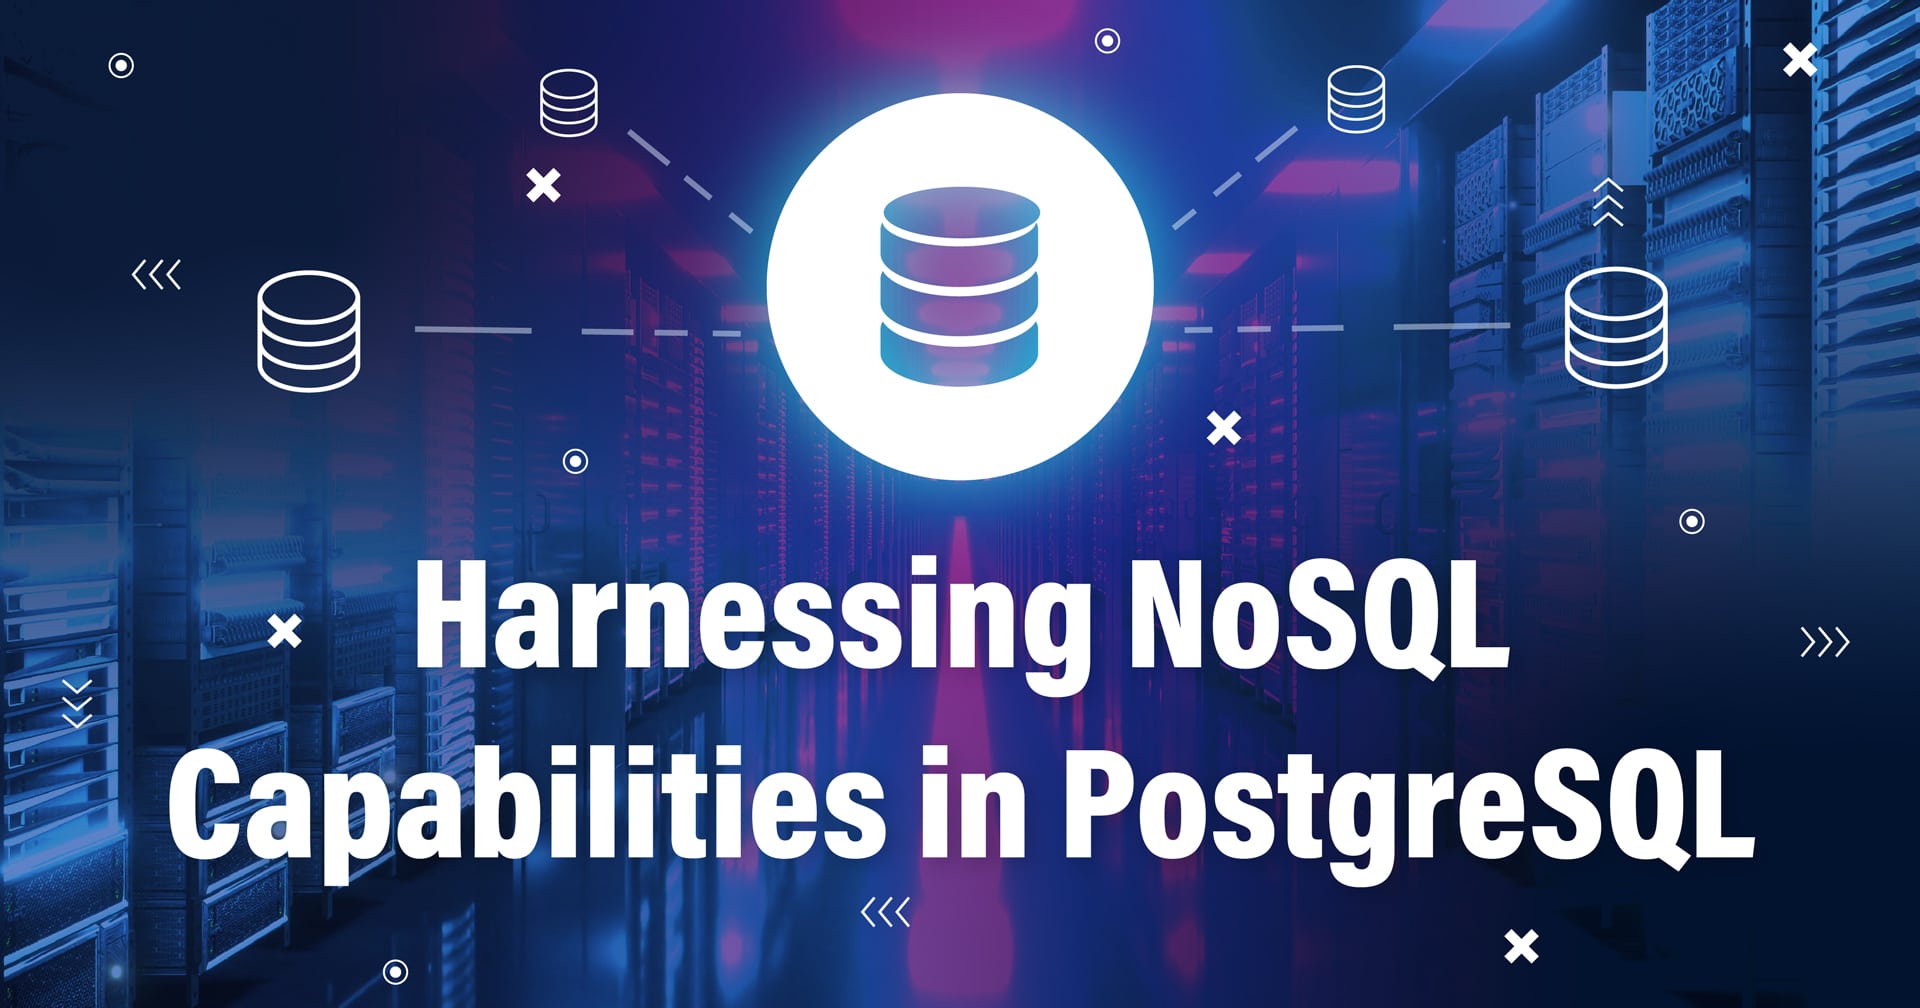 Imagem com símbolo representando um banco de dados conectado a outros bancos de dados e o texto Harnessing NoSQL Capabilities in PostgreSQL na parte inferior.